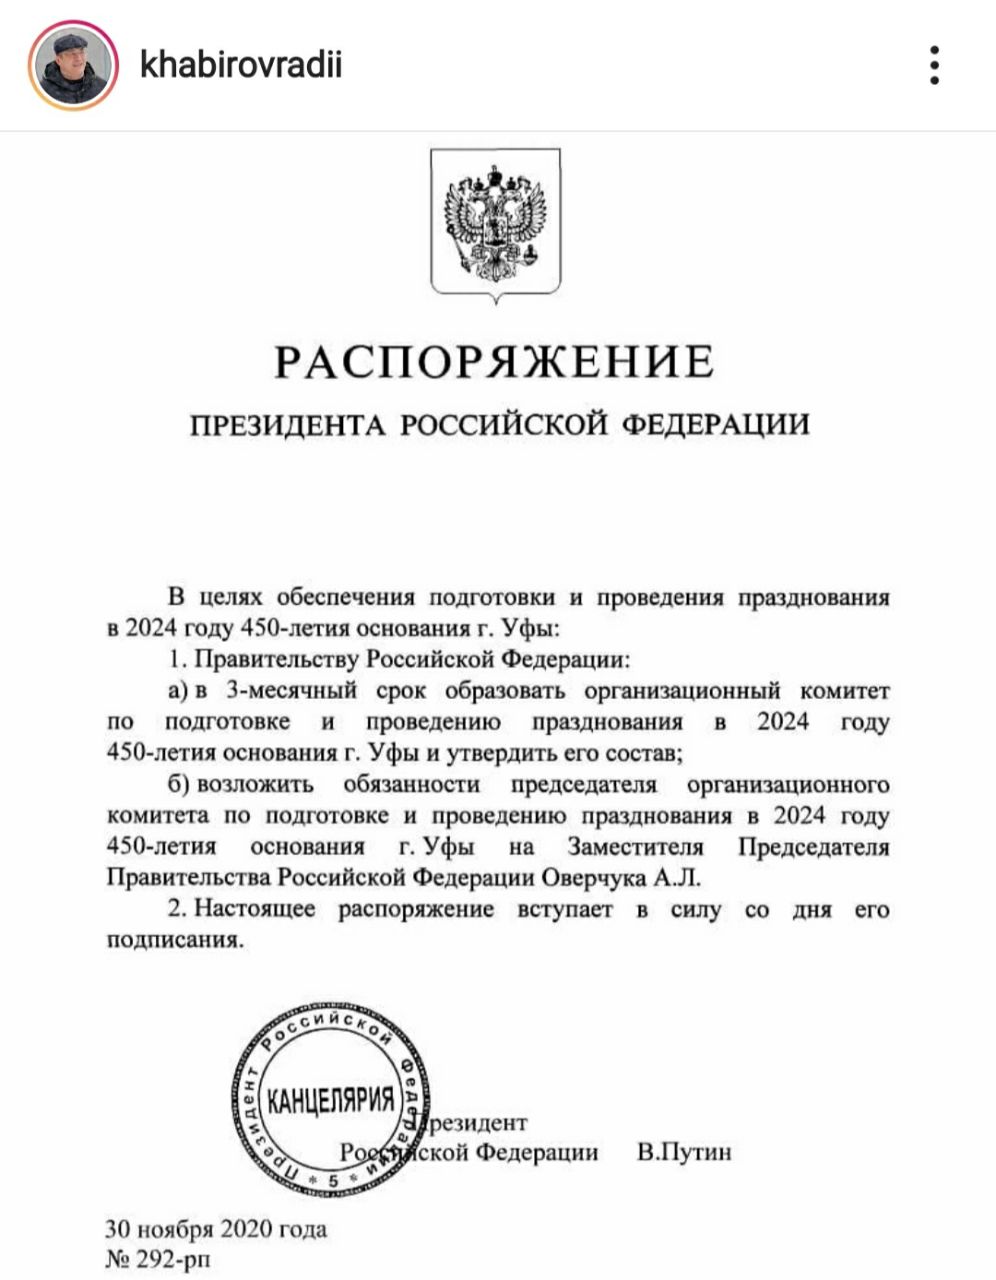 Владимир Путин подписал распоряжение о праздновании 450-летия основания Уфы